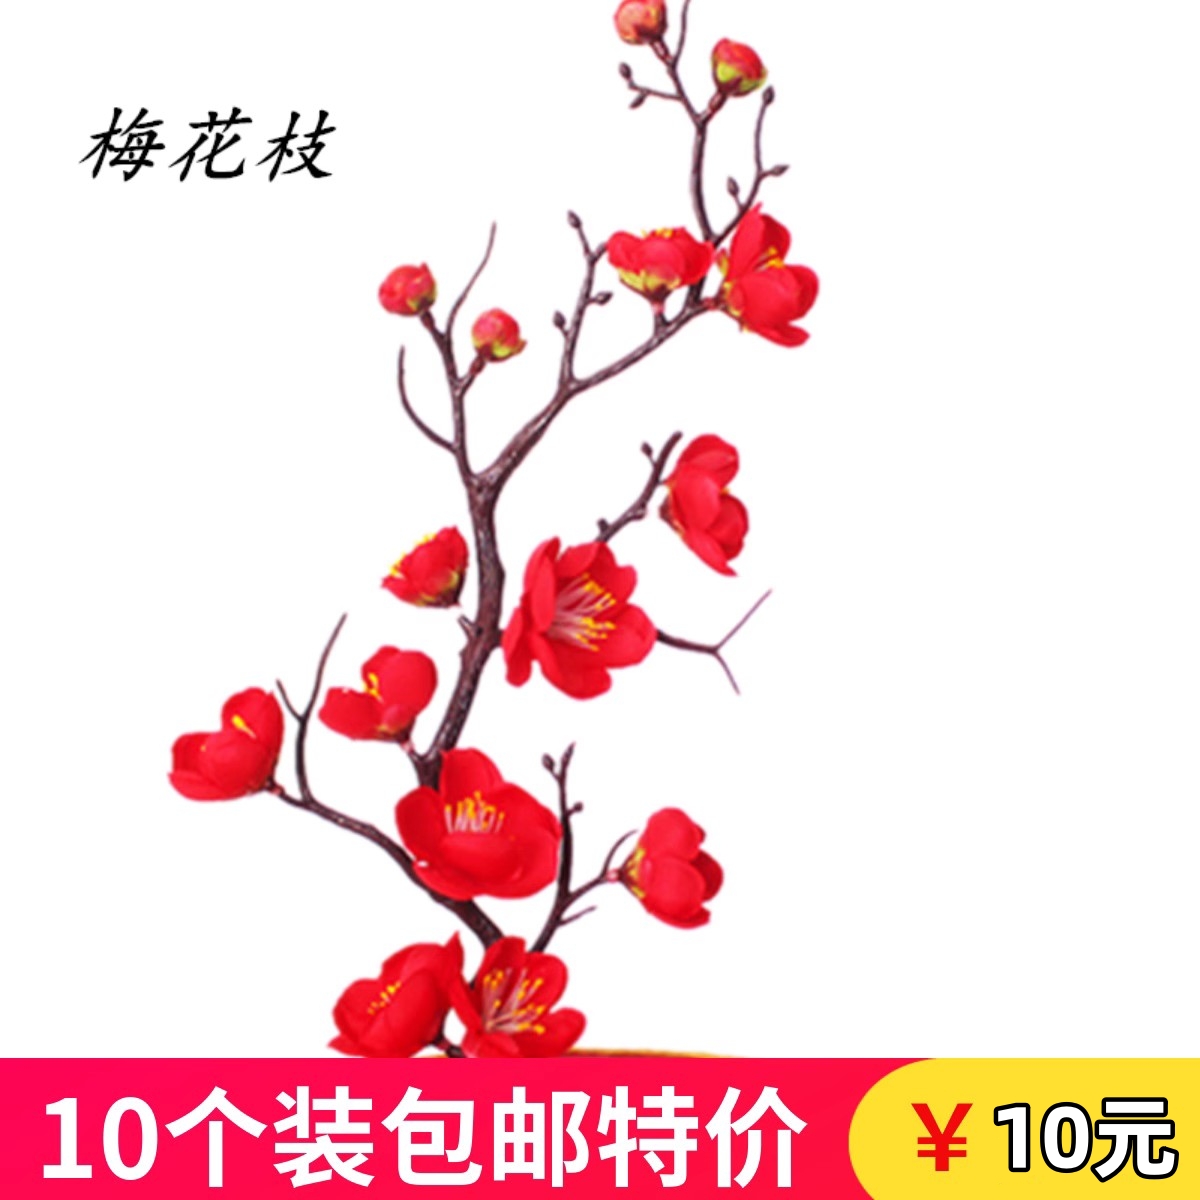 红色梅花枝烘焙插件中国风老人祝寿生